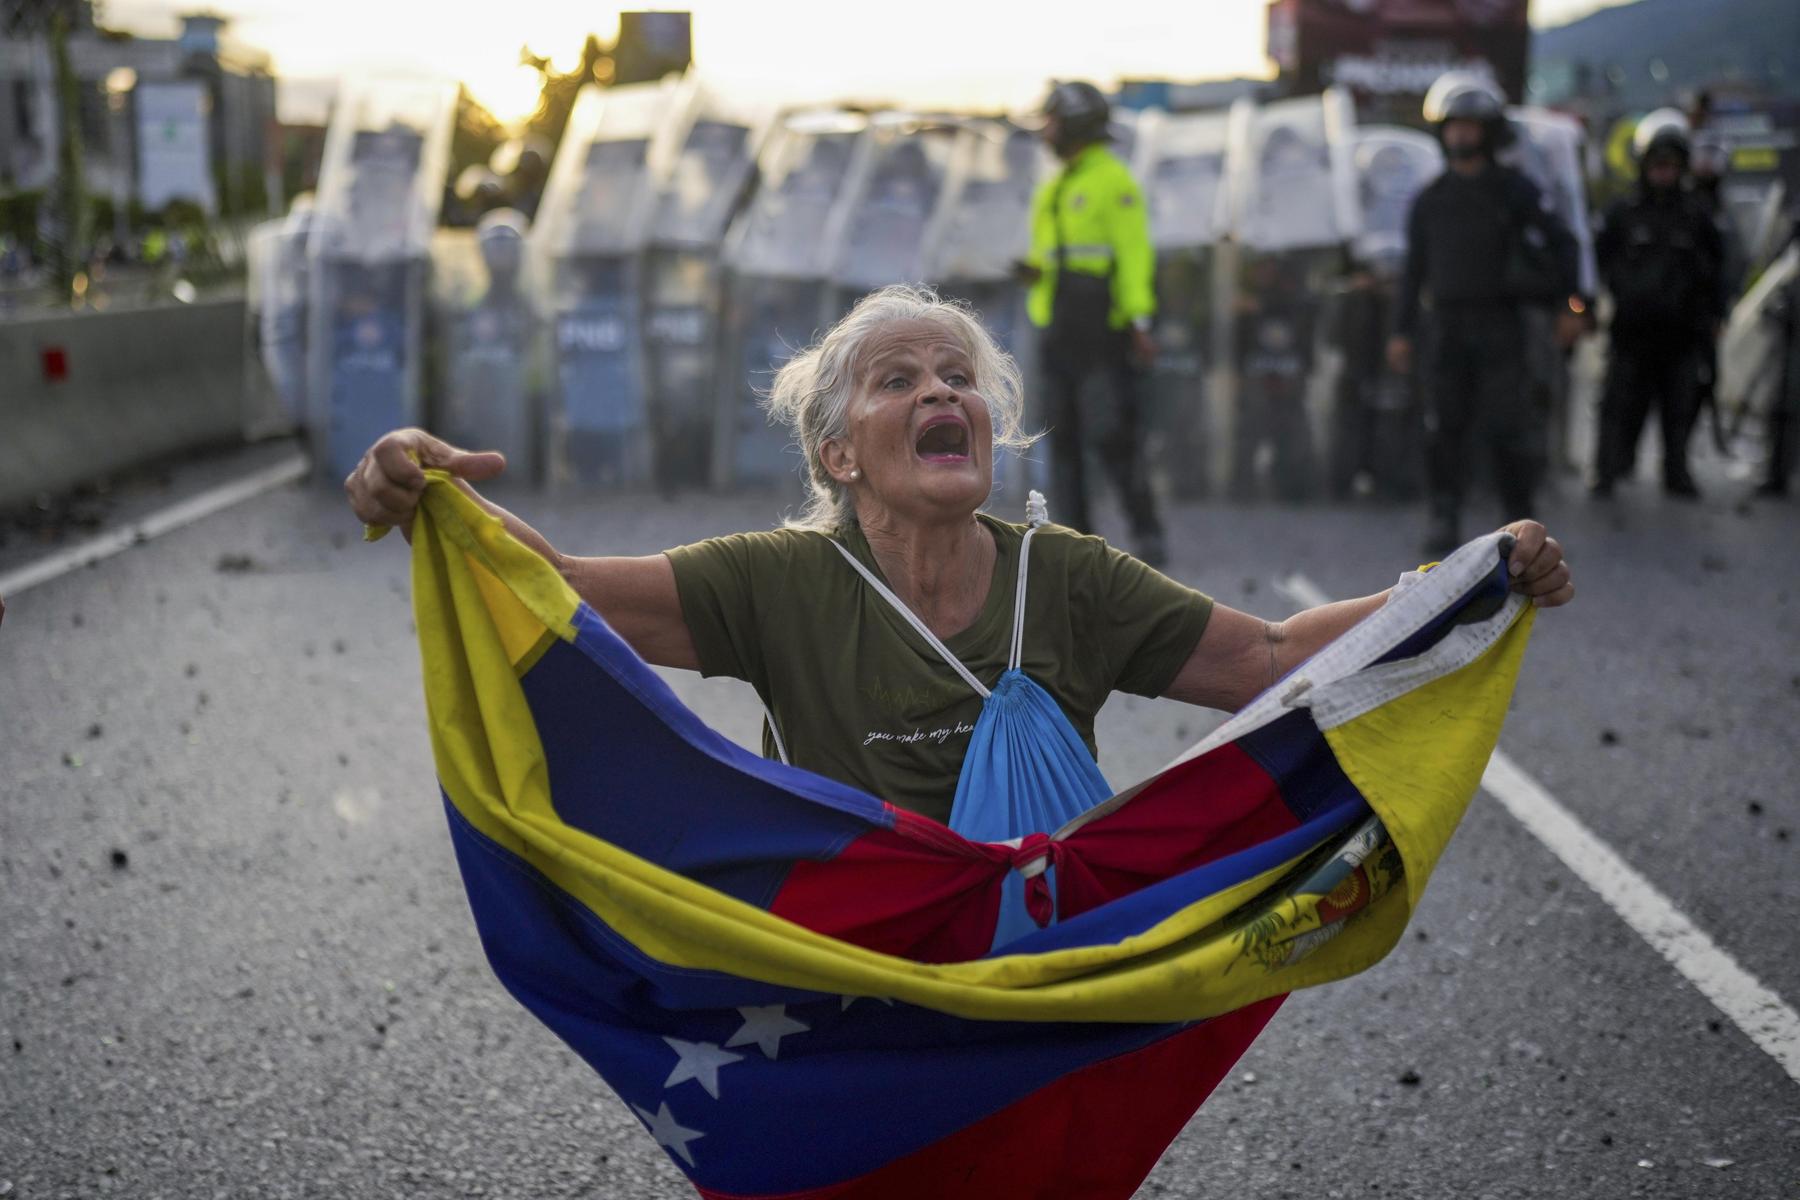 Wahlbetrug in Venezuela? - Opposition ruft zu Protesten auf, mindestens sechs Tote